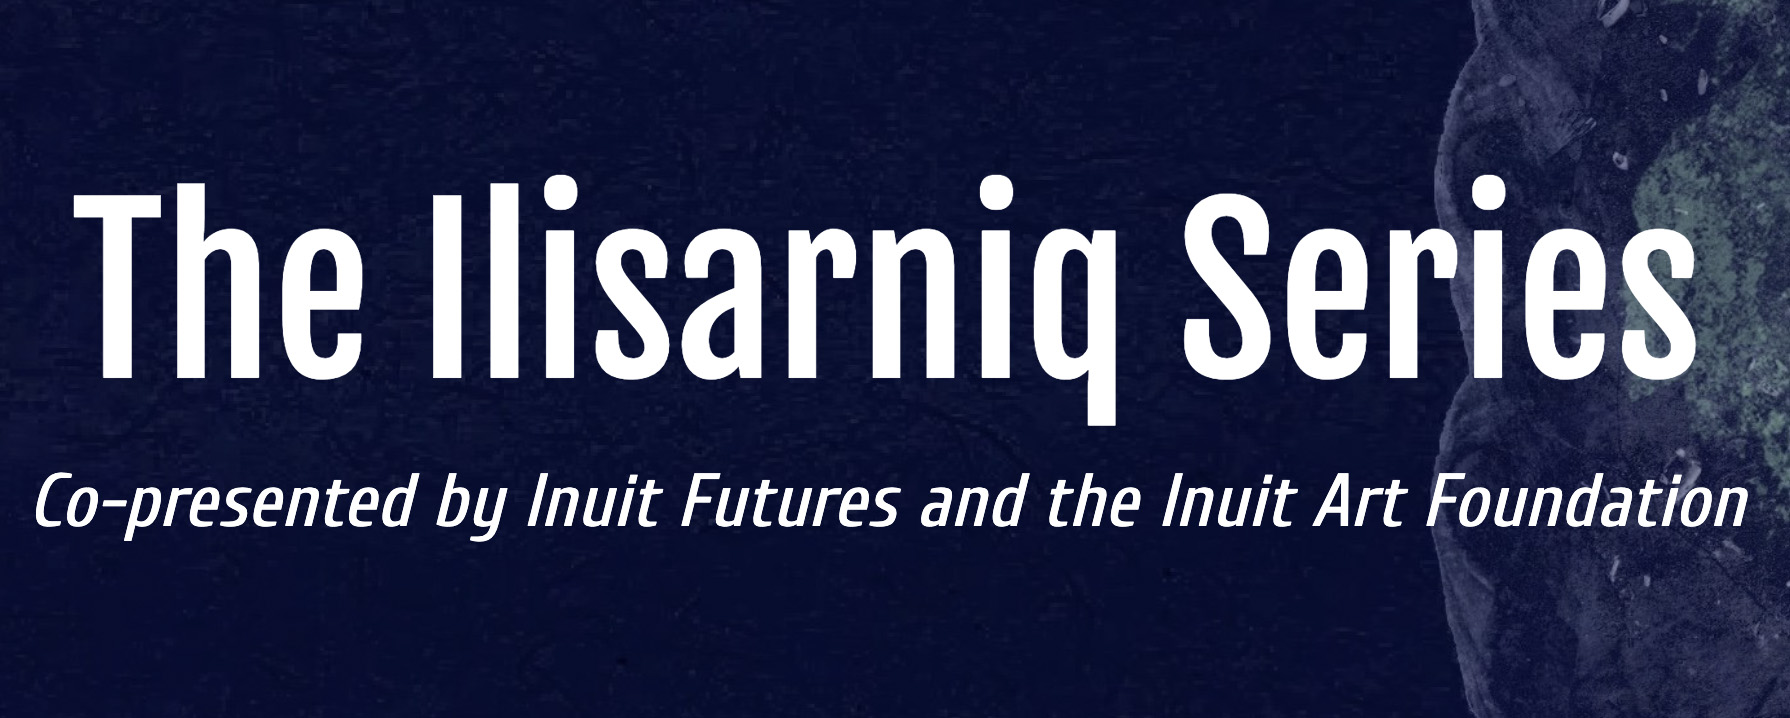 Ilisarniq Series Logo